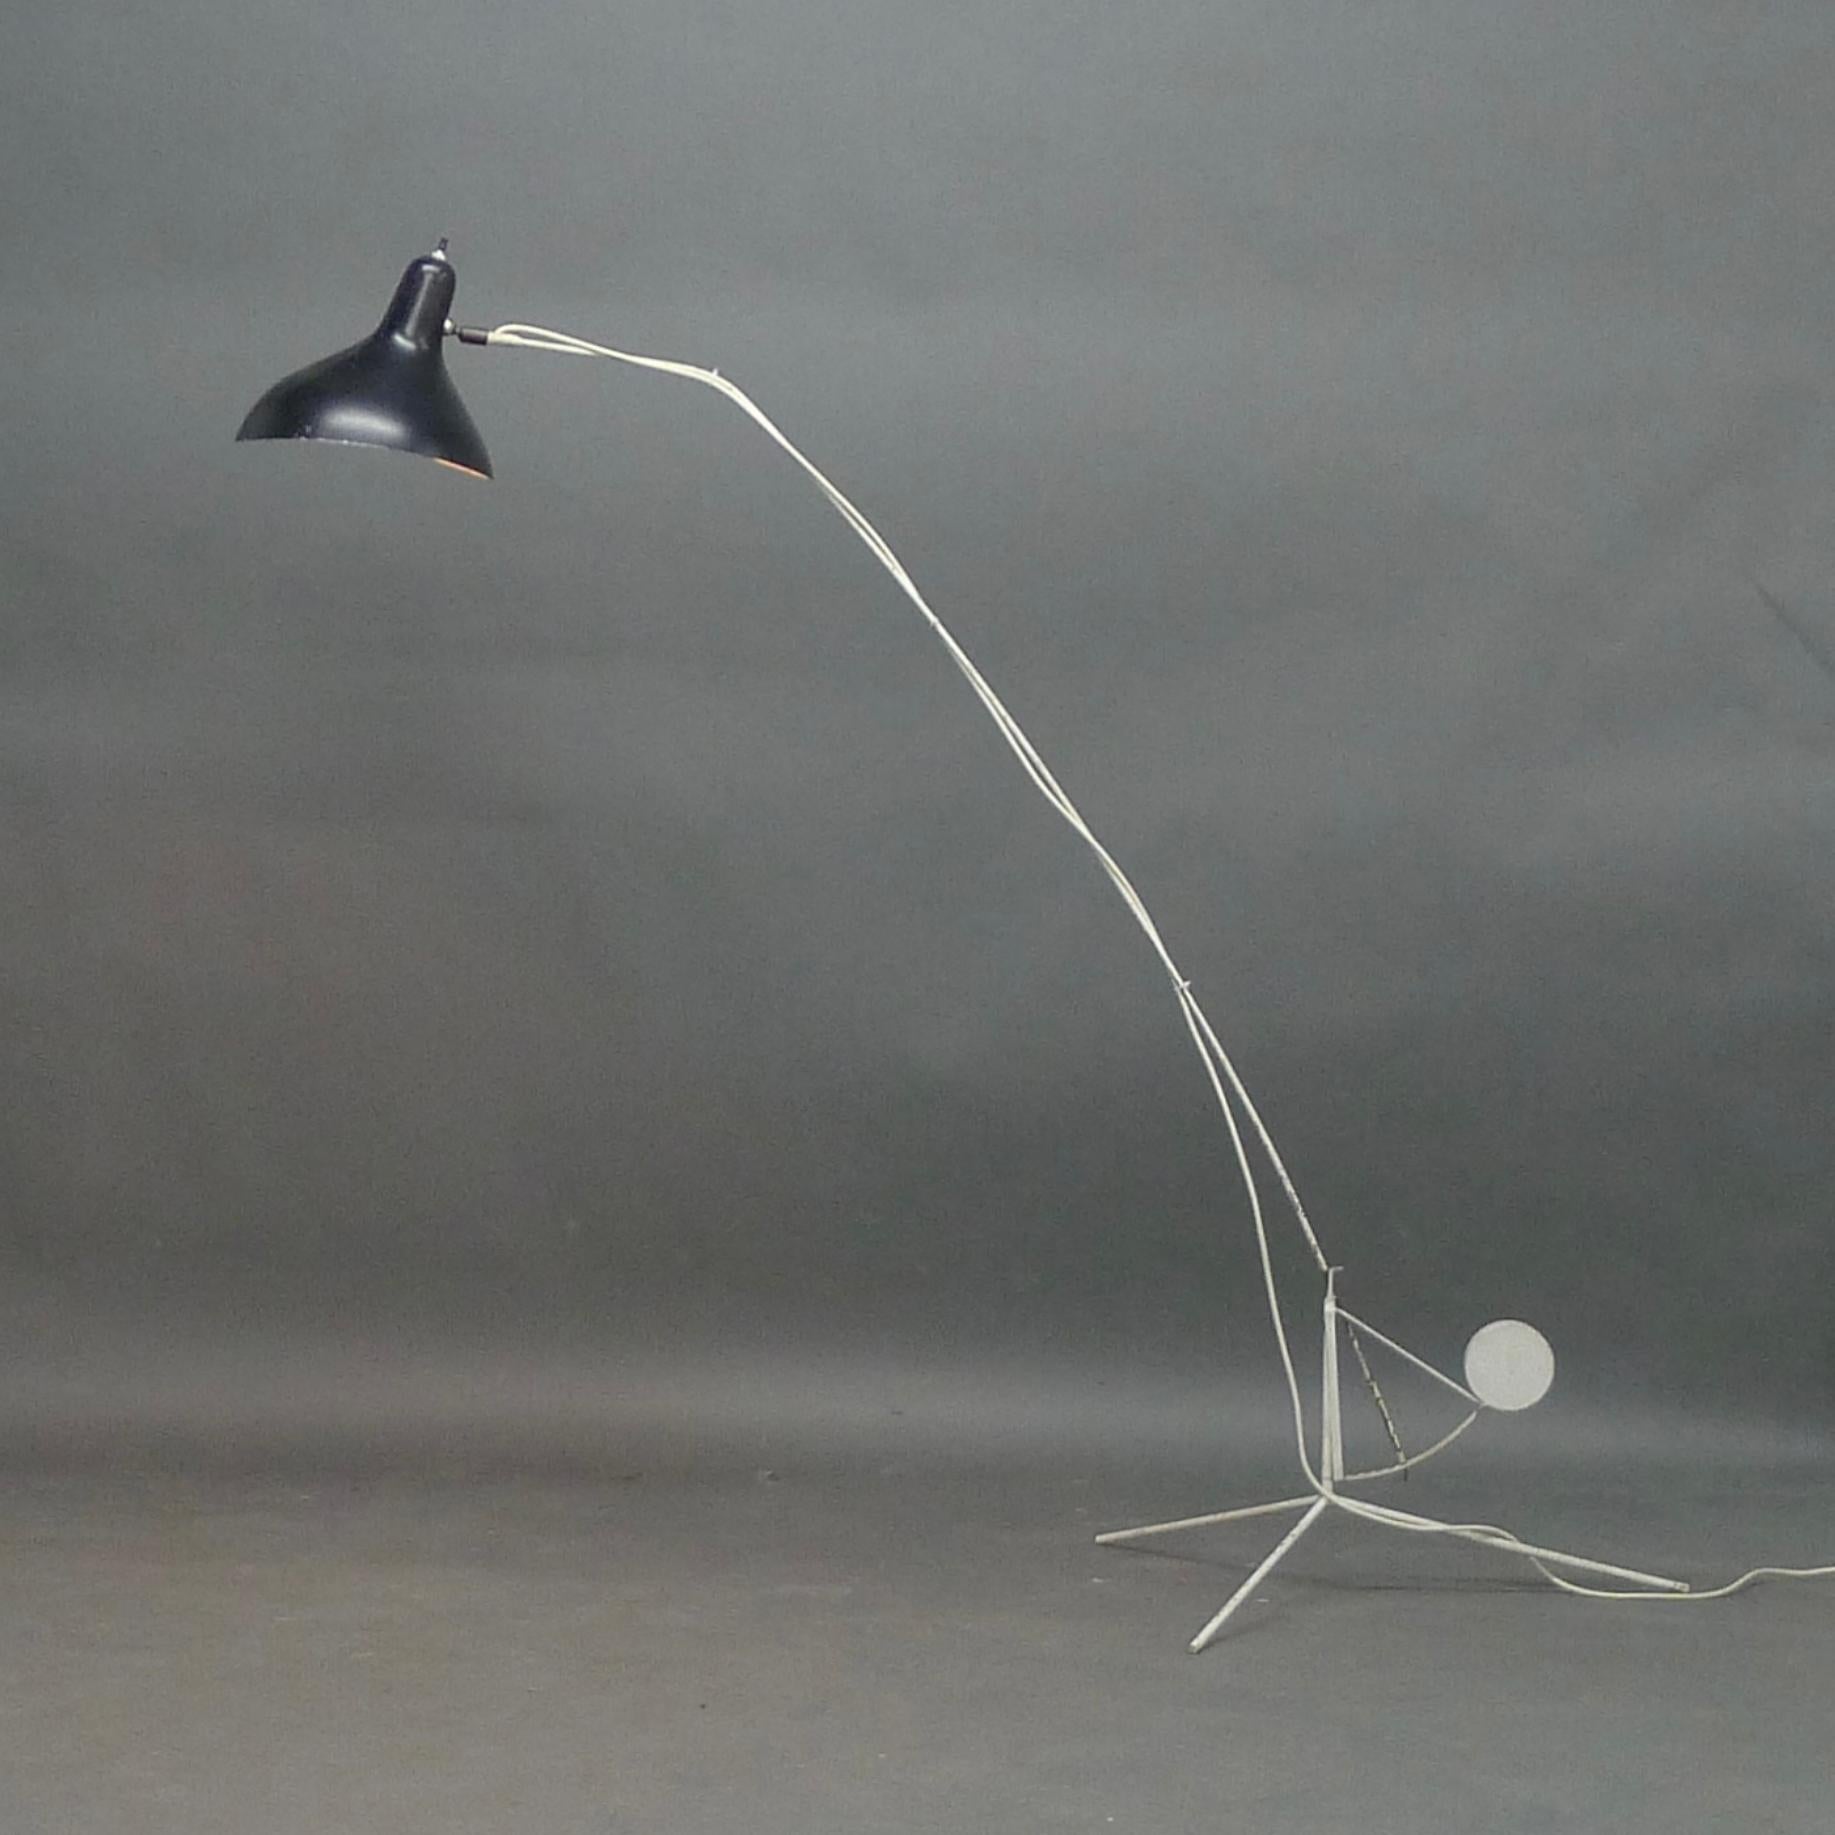 Original Mantis Stehleuchte, Modell BS1B, entworfen von Bernard Schottlander und hergestellt von J T Kalman, Wien, um 1956

Schwarz emaillierter Aluminiumschirm auf einem weiß emaillierten Stahlarm und -fuß.

161 cm hoch, 65 cm breit, 137 cm